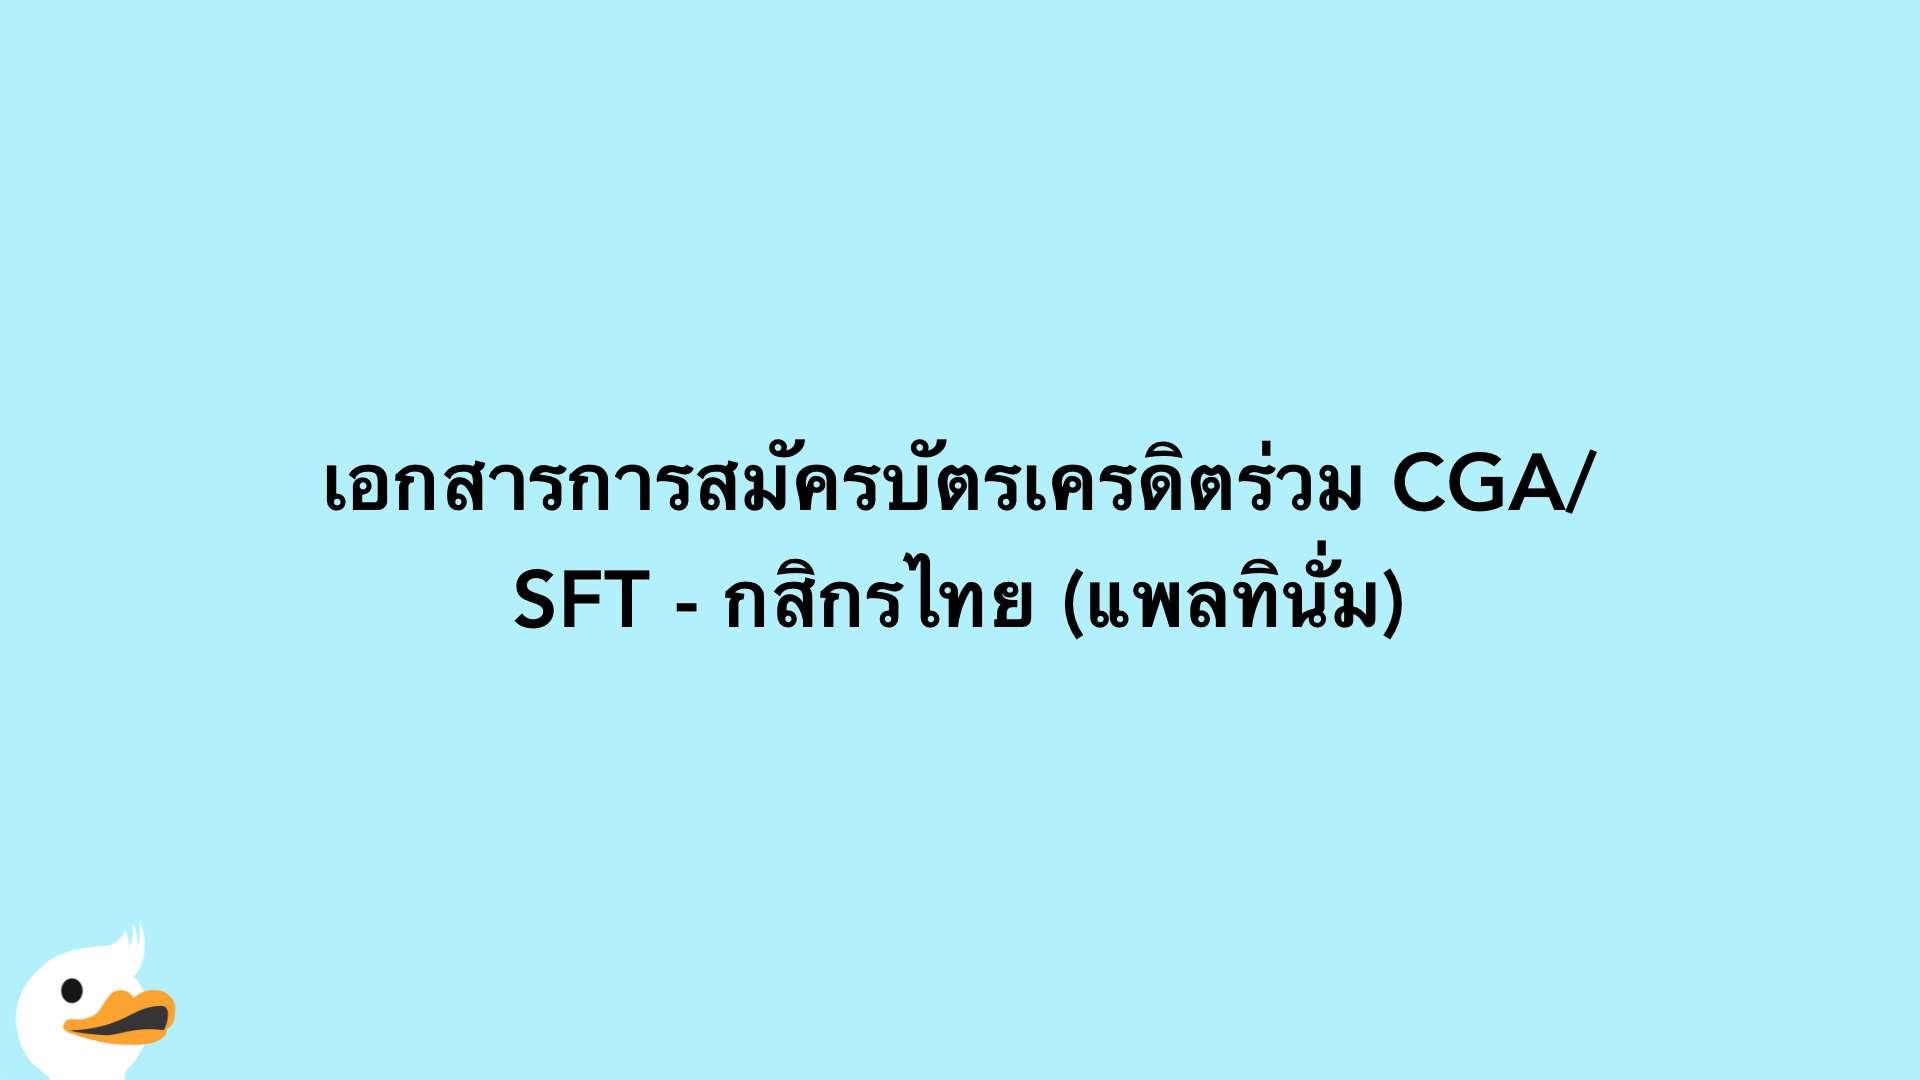 เอกสารการสมัครบัตรเครดิตร่วม CGA/SFT - กสิกรไทย (แพลทินั่ม)